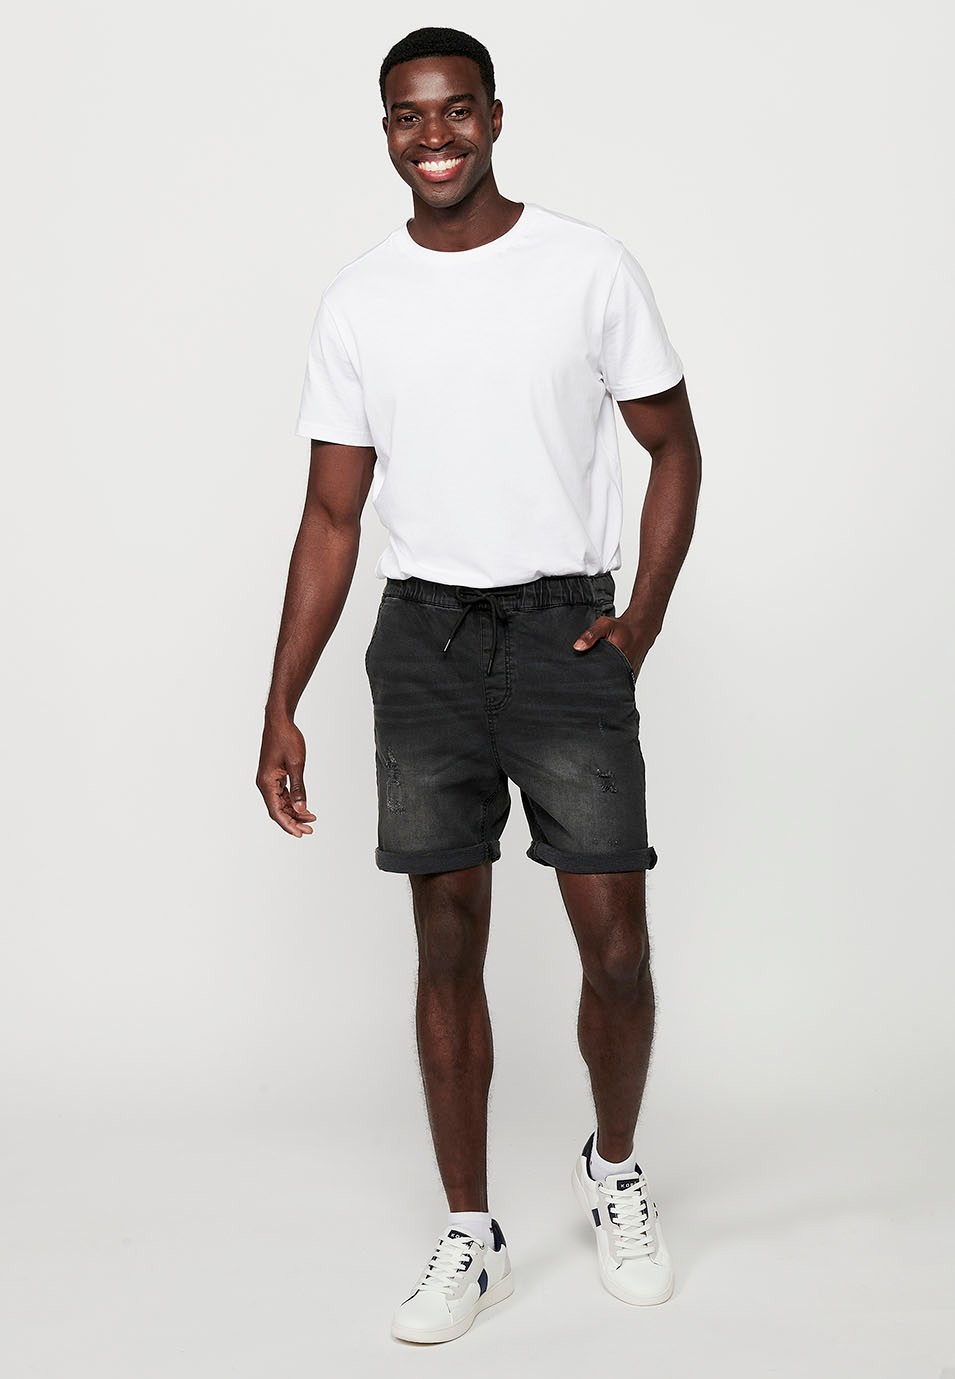 Bermuda Jogger acabat denim, color negre per a home